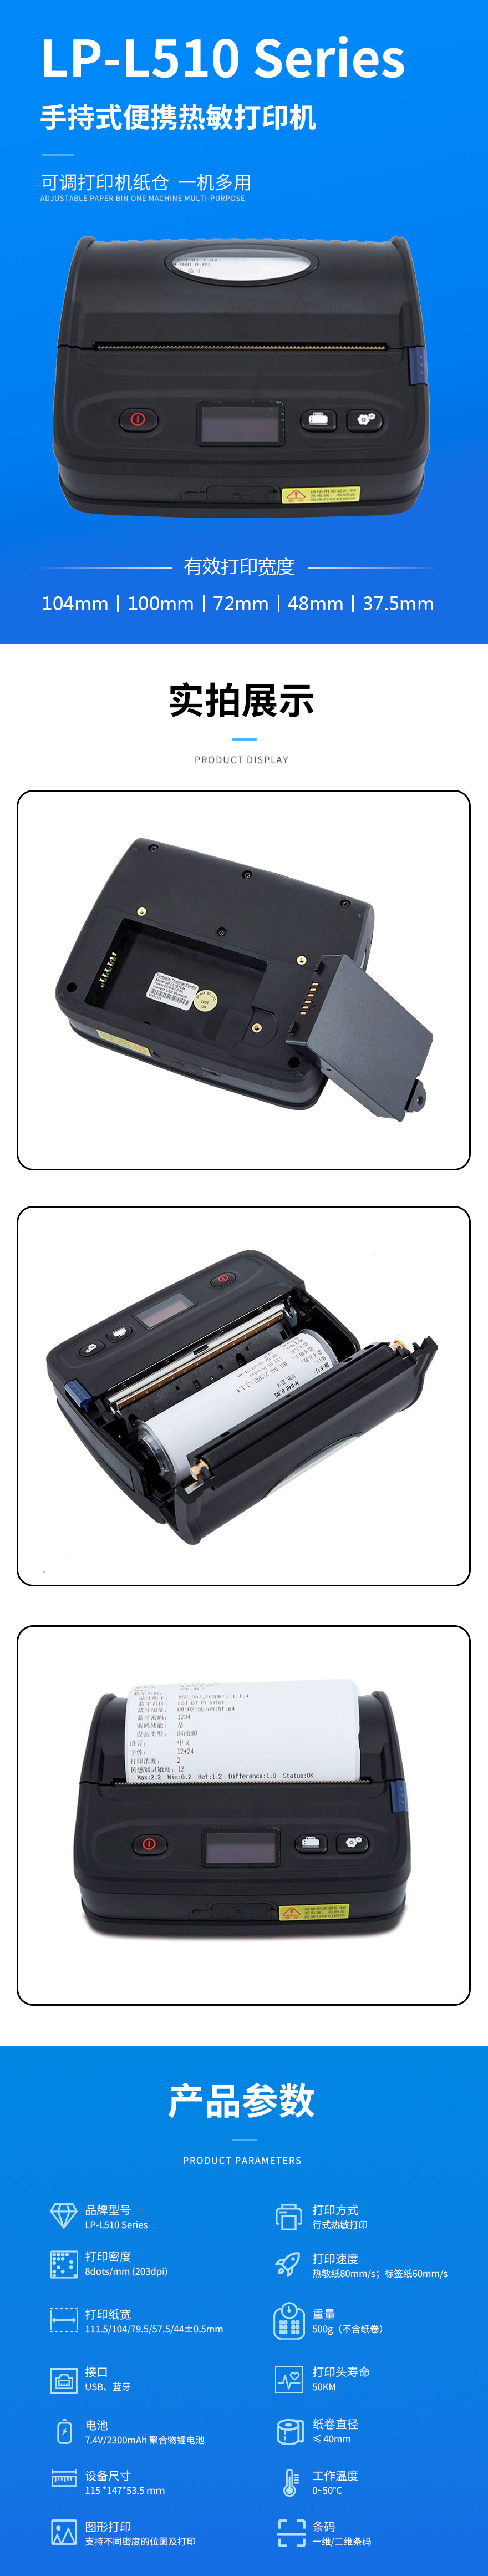 物果 LP-L510 Series 便携打印机